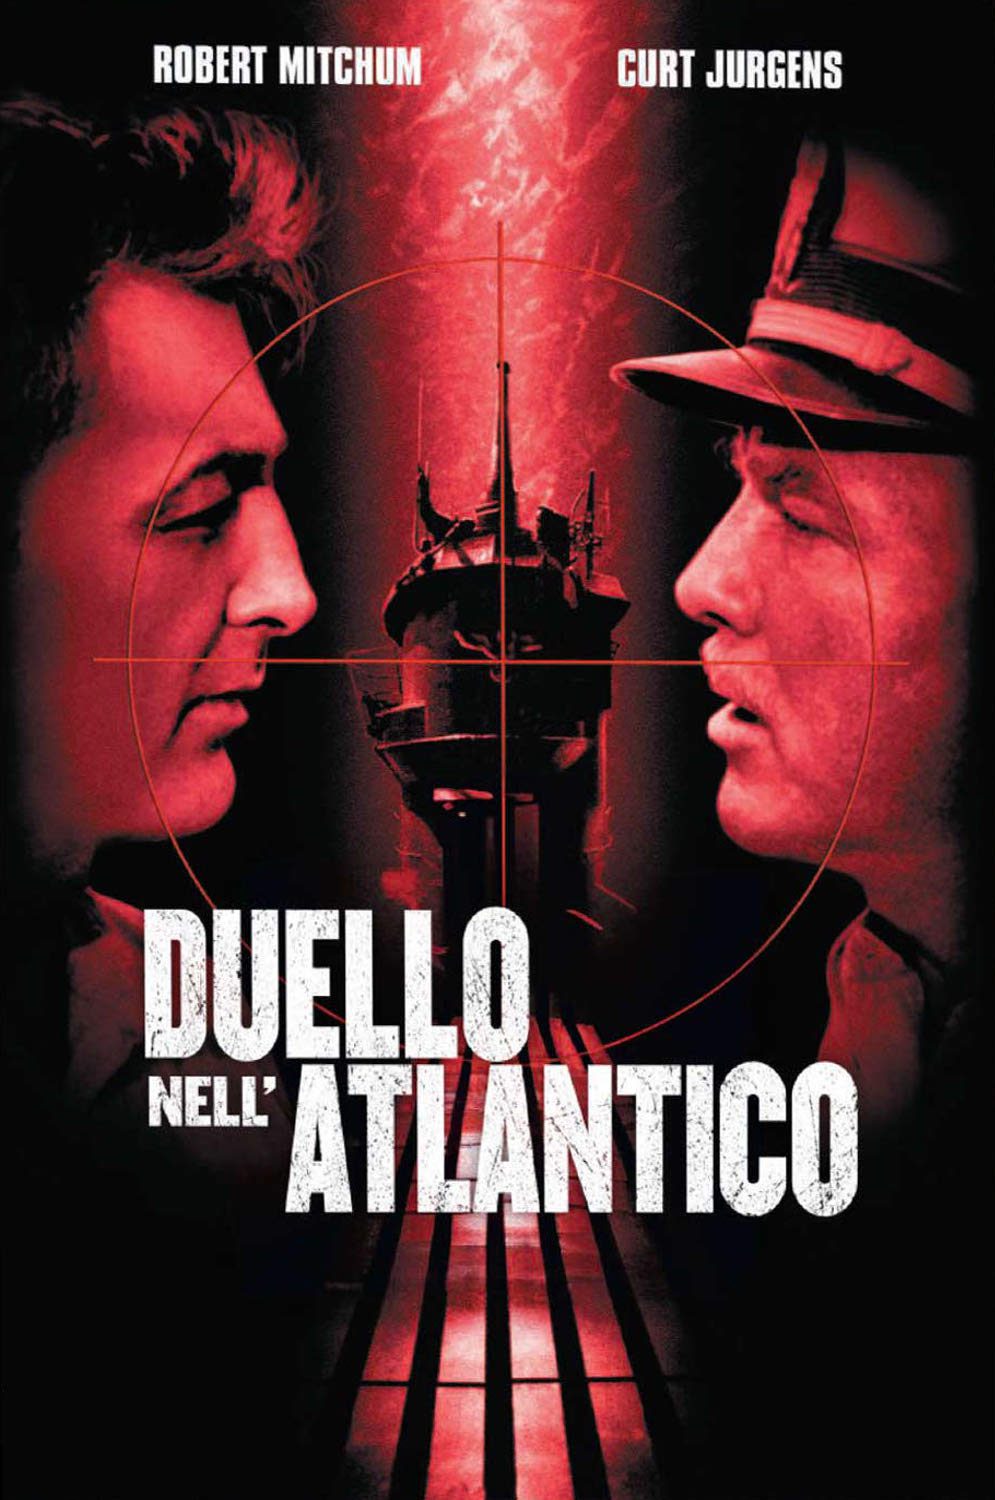 Duello nell’Atlantico [HD] (1957)